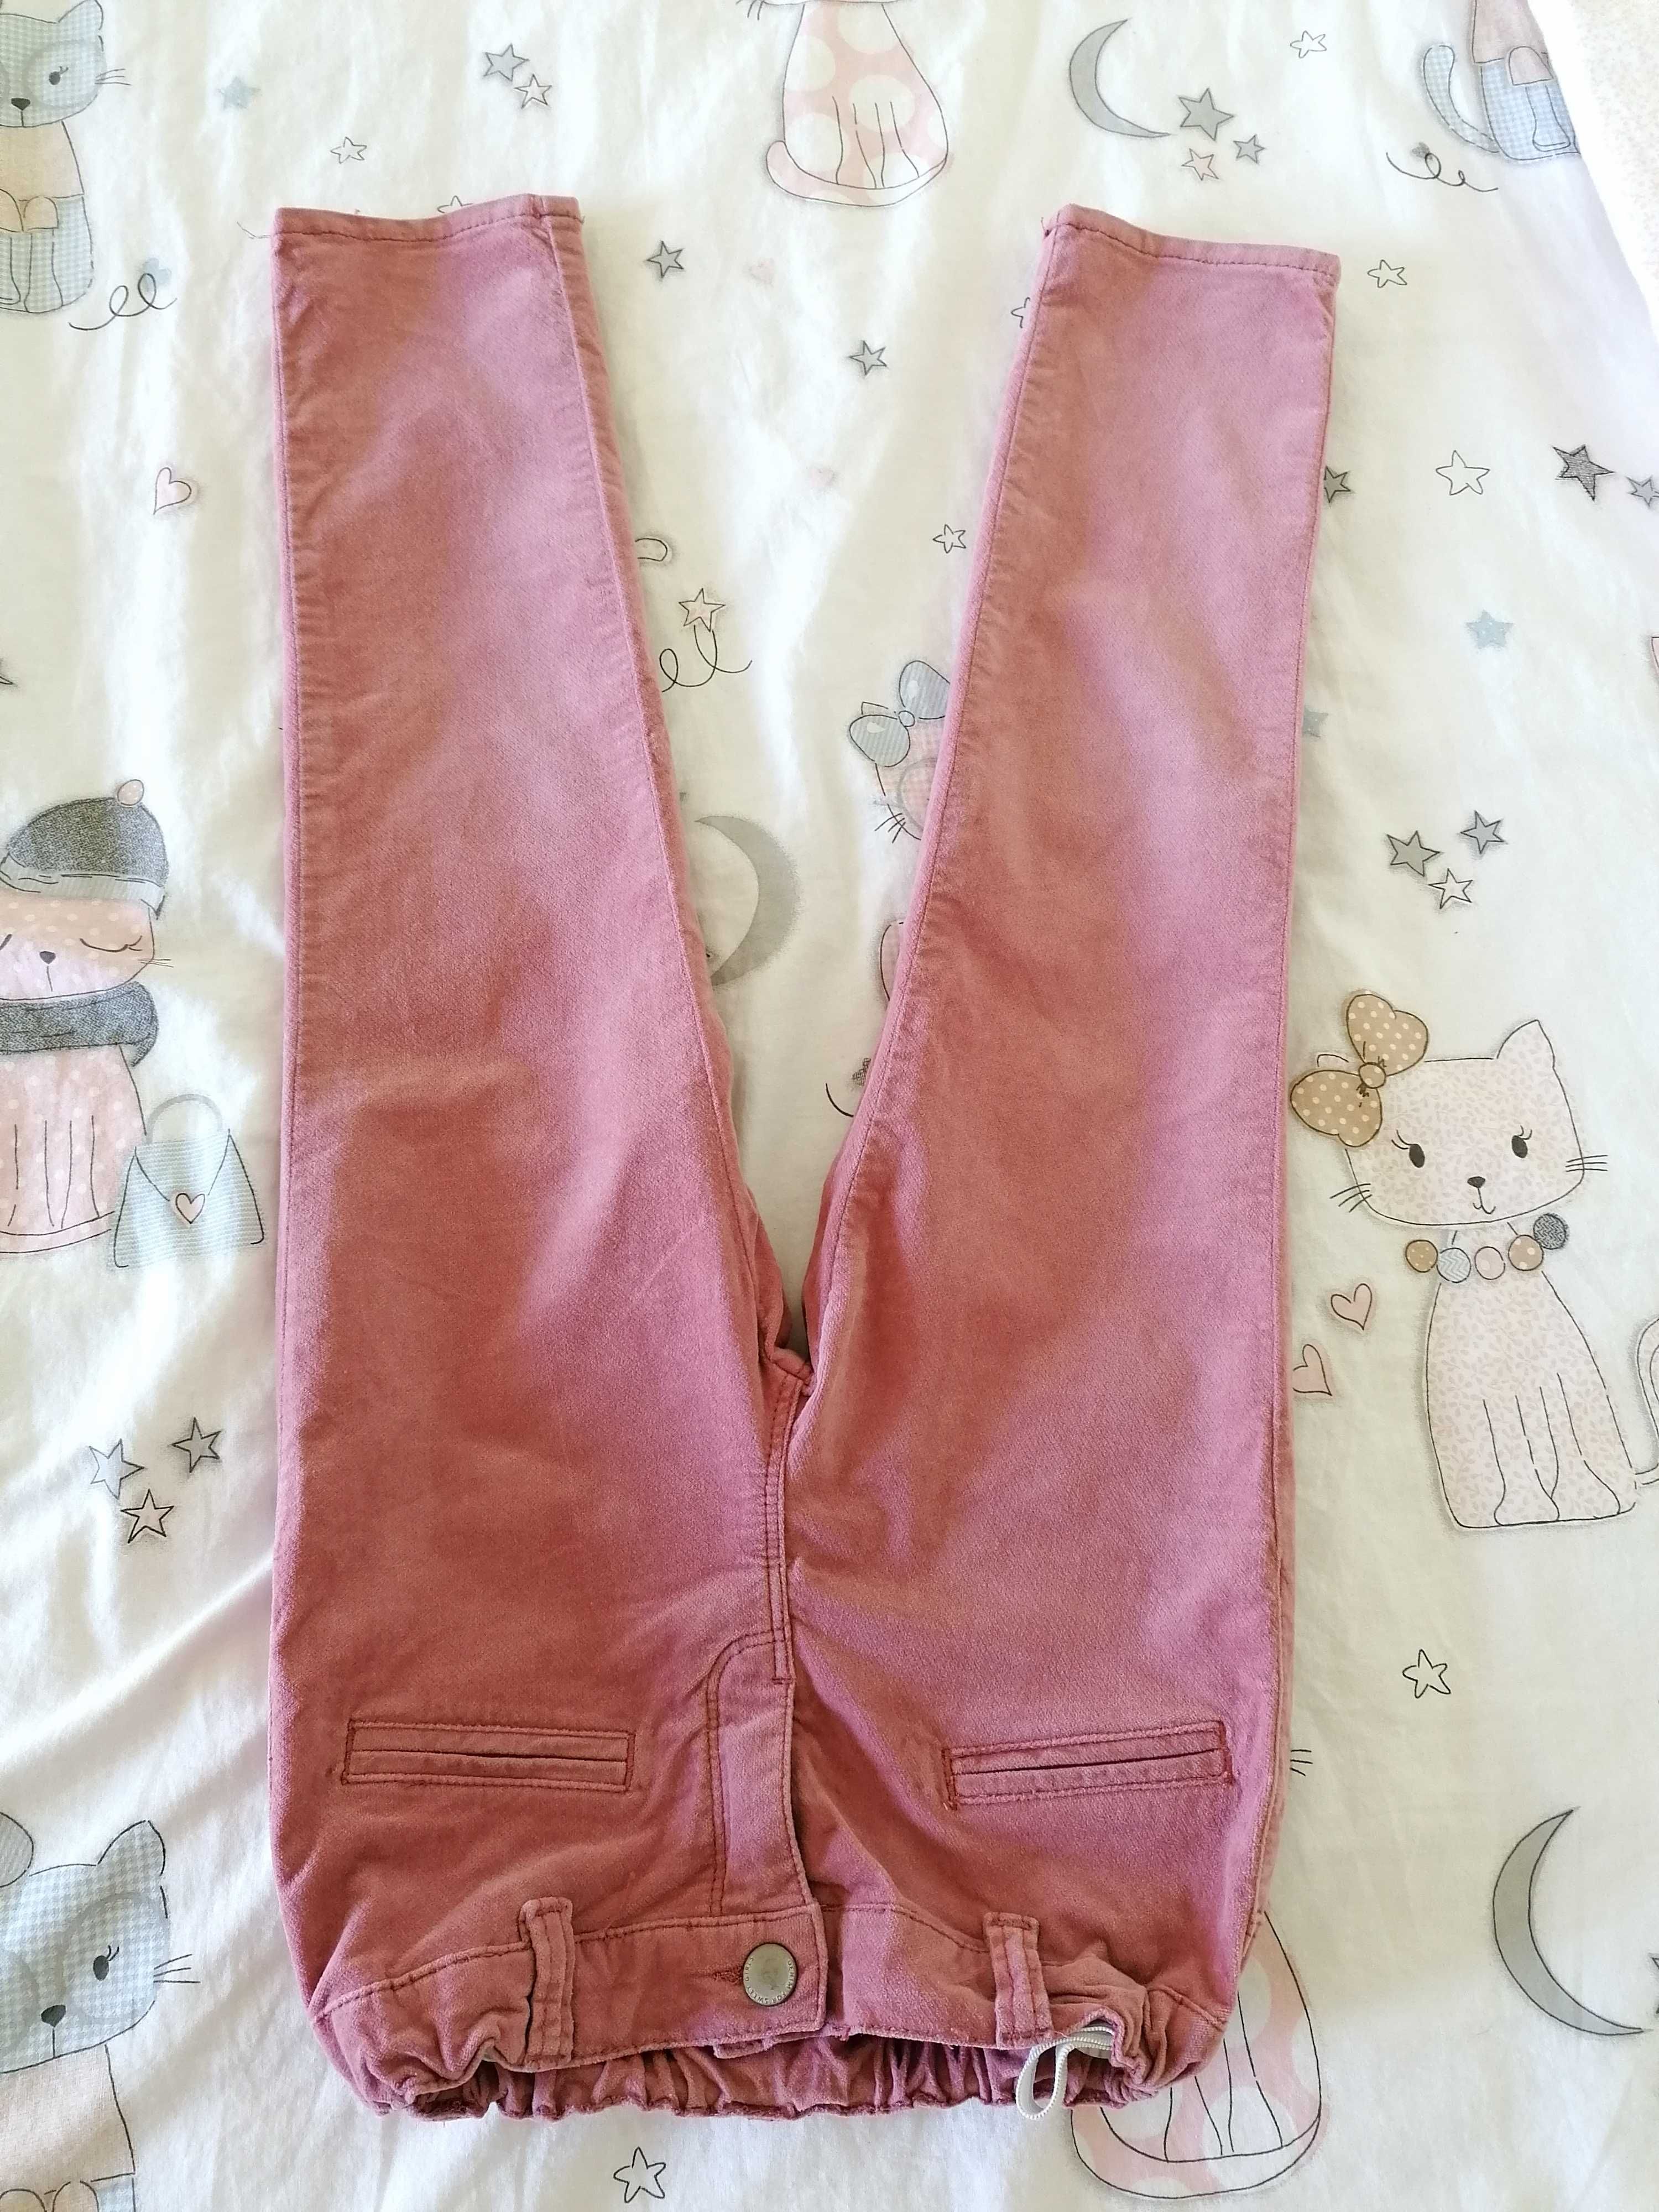 Джинсы, штаны, брюки Chicco, 110-116 см, 5-6 лет, девочка